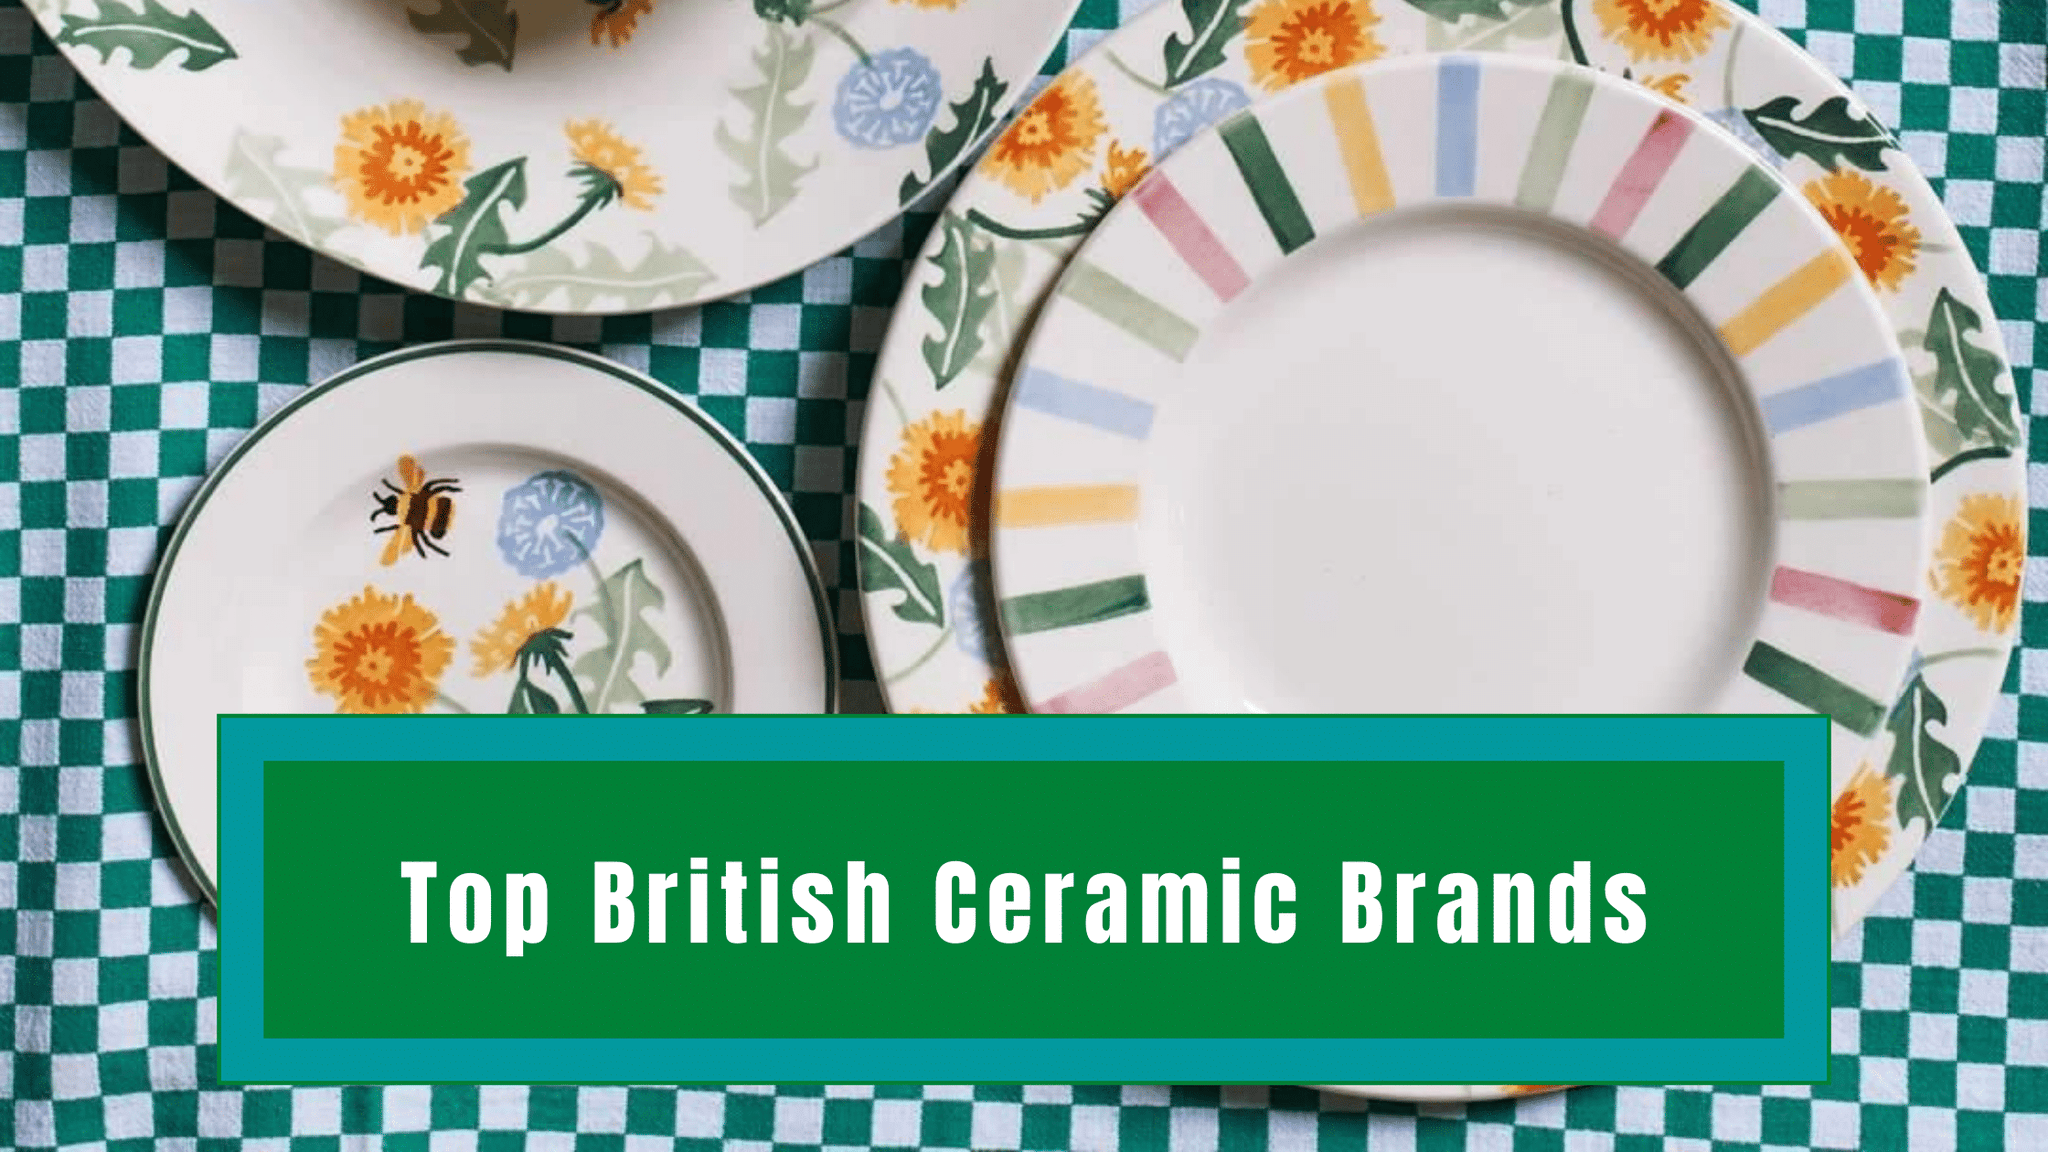 Top British Ceramic Brands